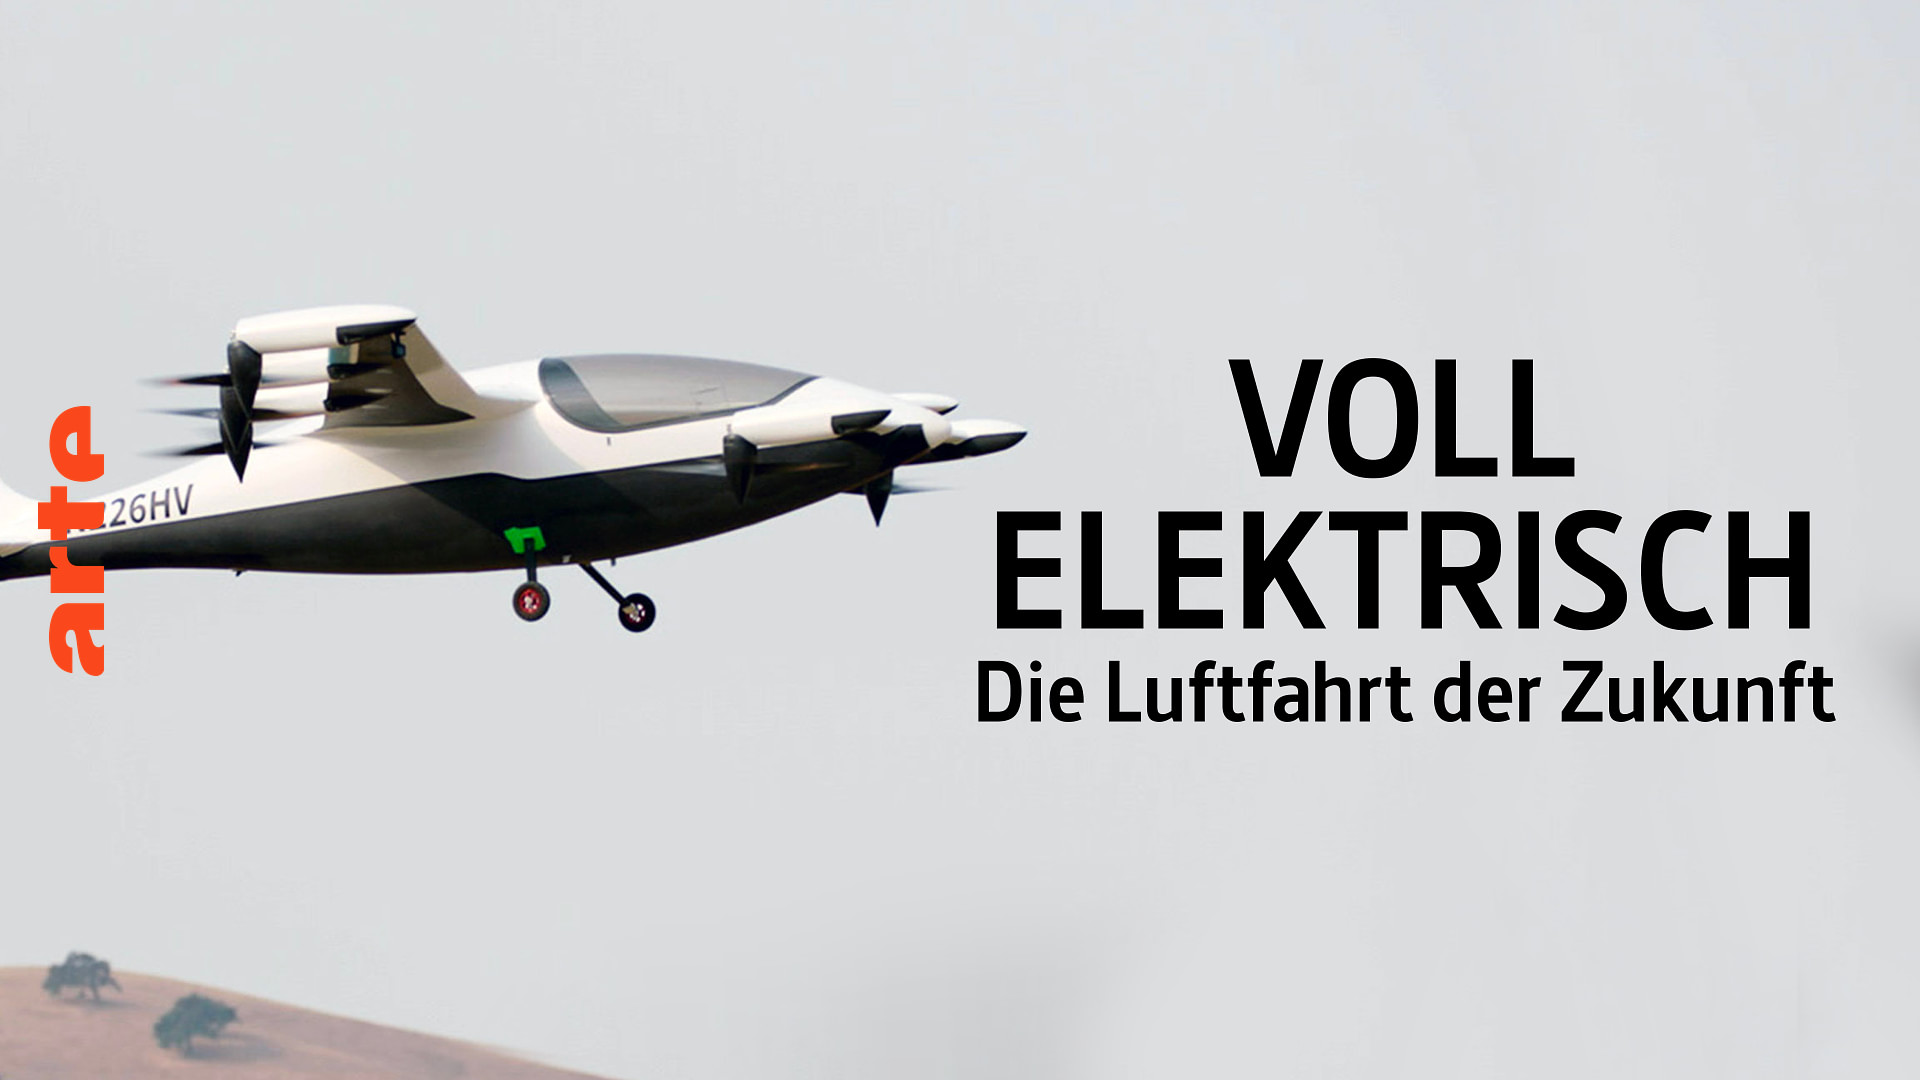 Voll elektrisch: Die Luftfahrt der Zukunft